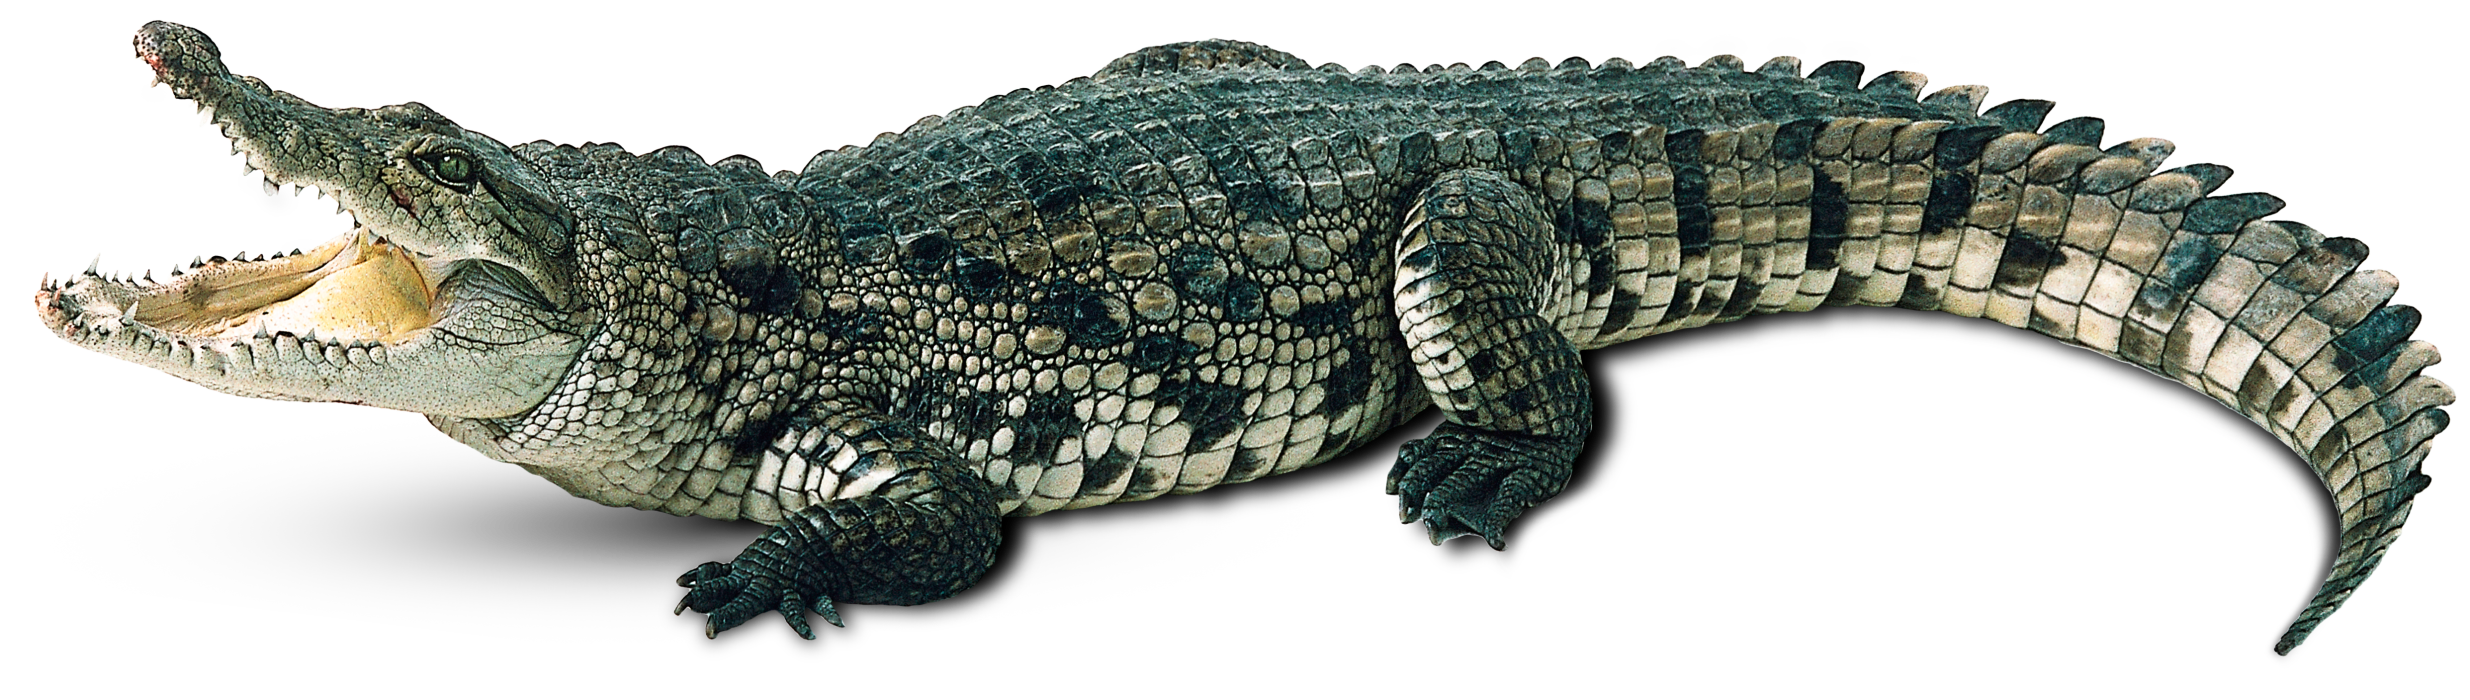 Download PNG image - Alligator Background PNG 